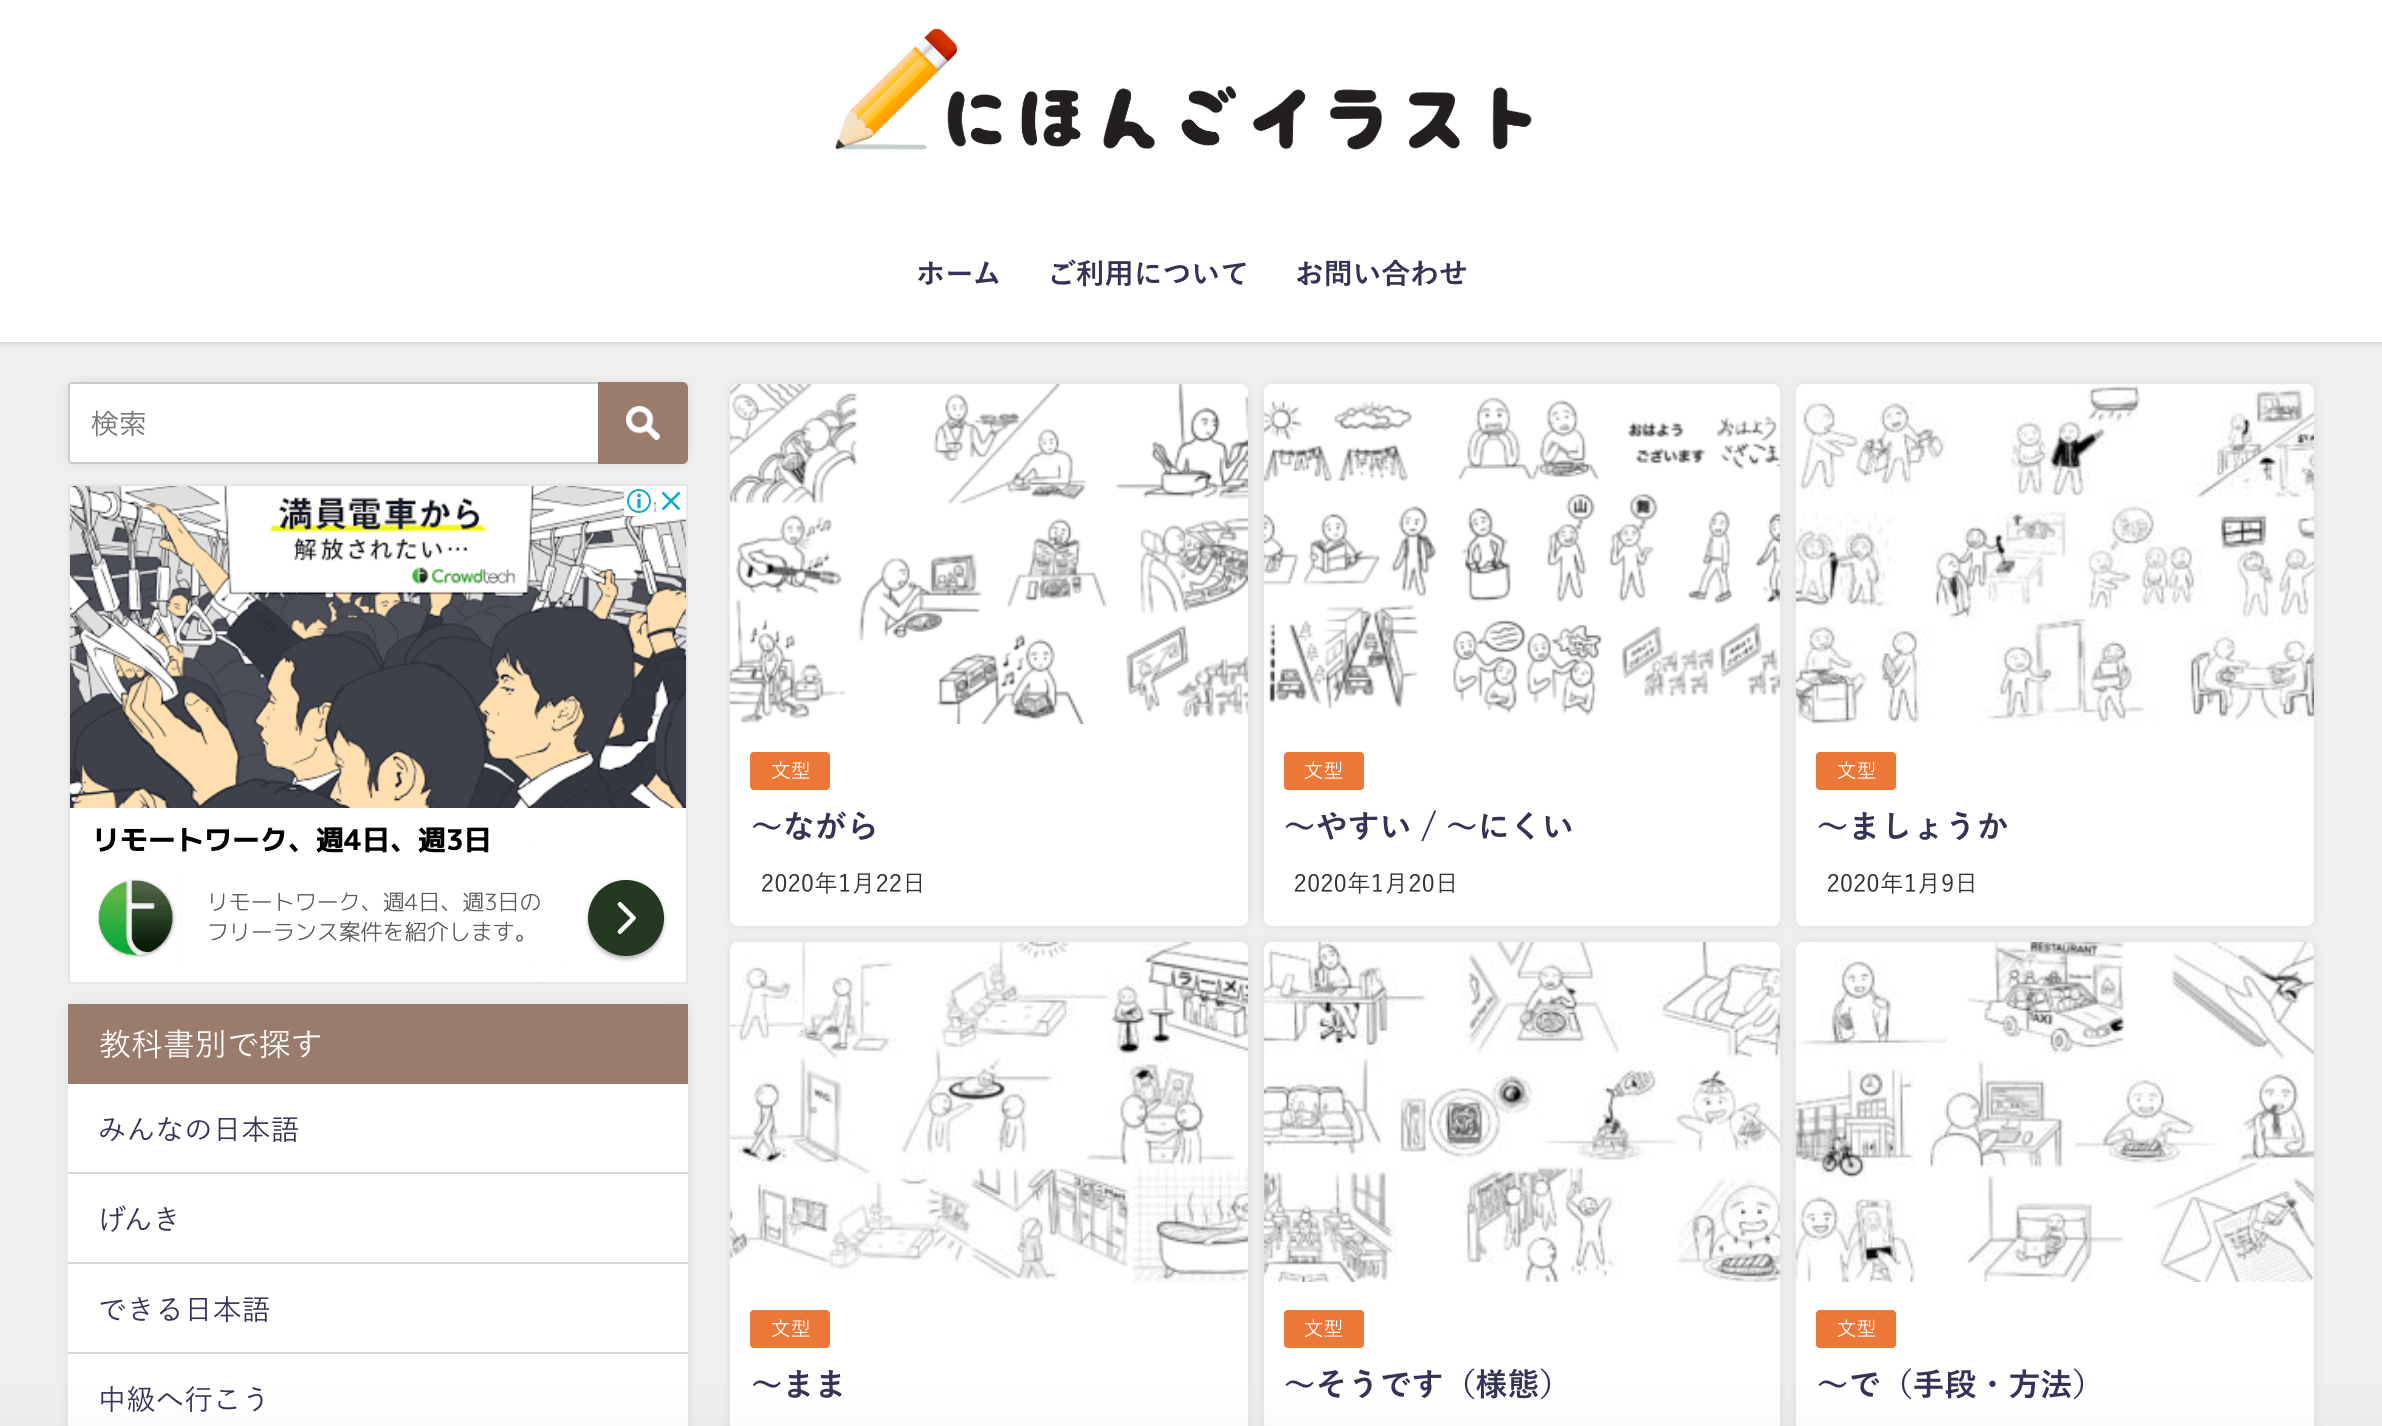 日本語教師が絵カードを作るときに役立つサイト イラスト教材 日本語net